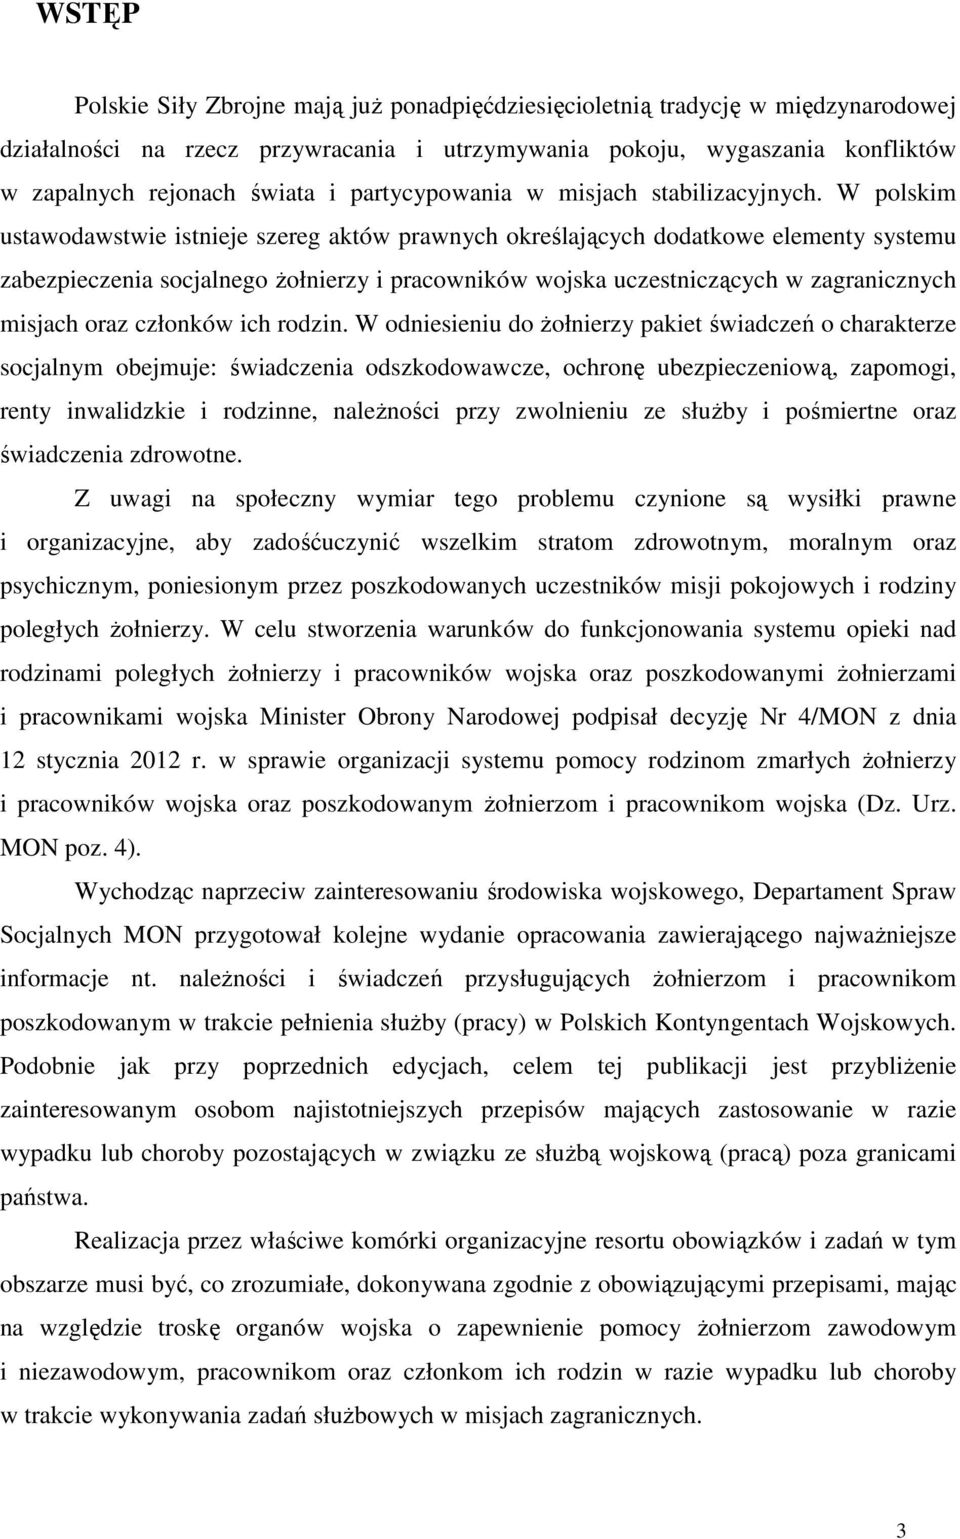 W polskim ustawodawstwie istnieje szereg aktów prawnych określających dodatkowe elementy systemu zabezpieczenia socjalnego Ŝołnierzy i pracowników wojska uczestniczących w zagranicznych misjach oraz